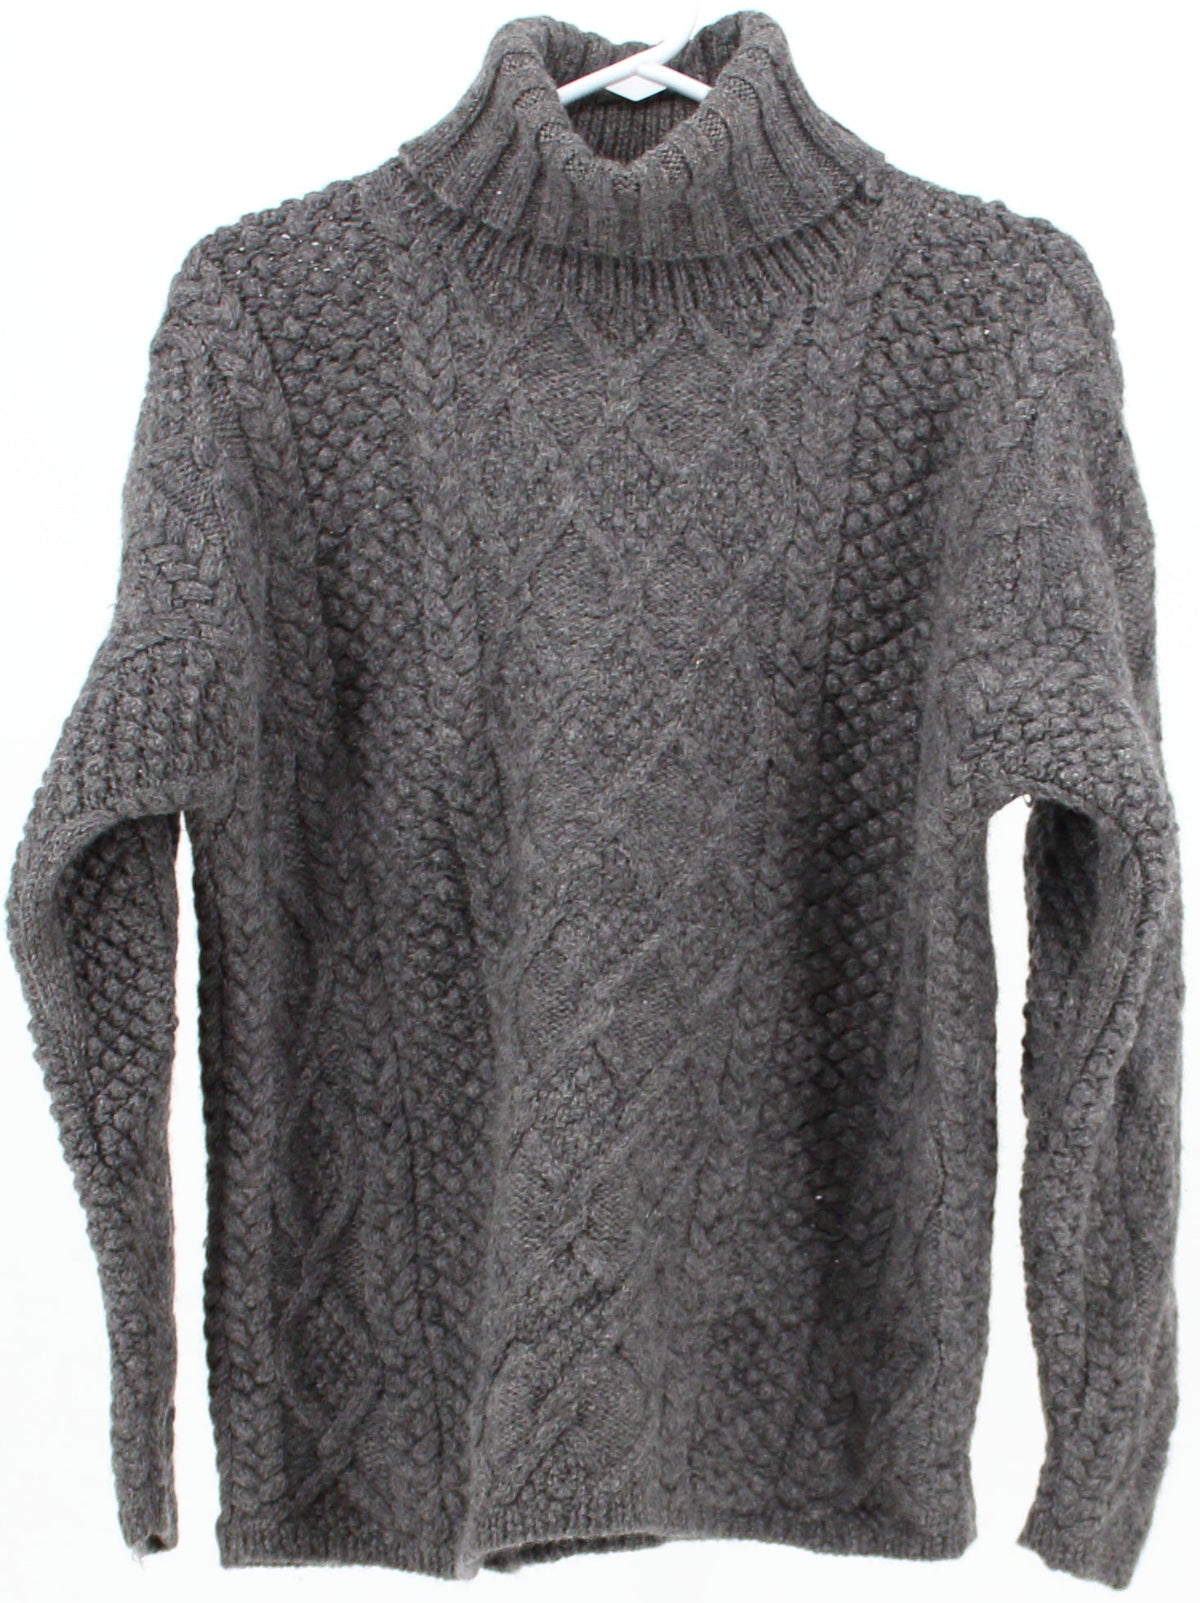 J Crew Dark Grey Turtleneck Sweater